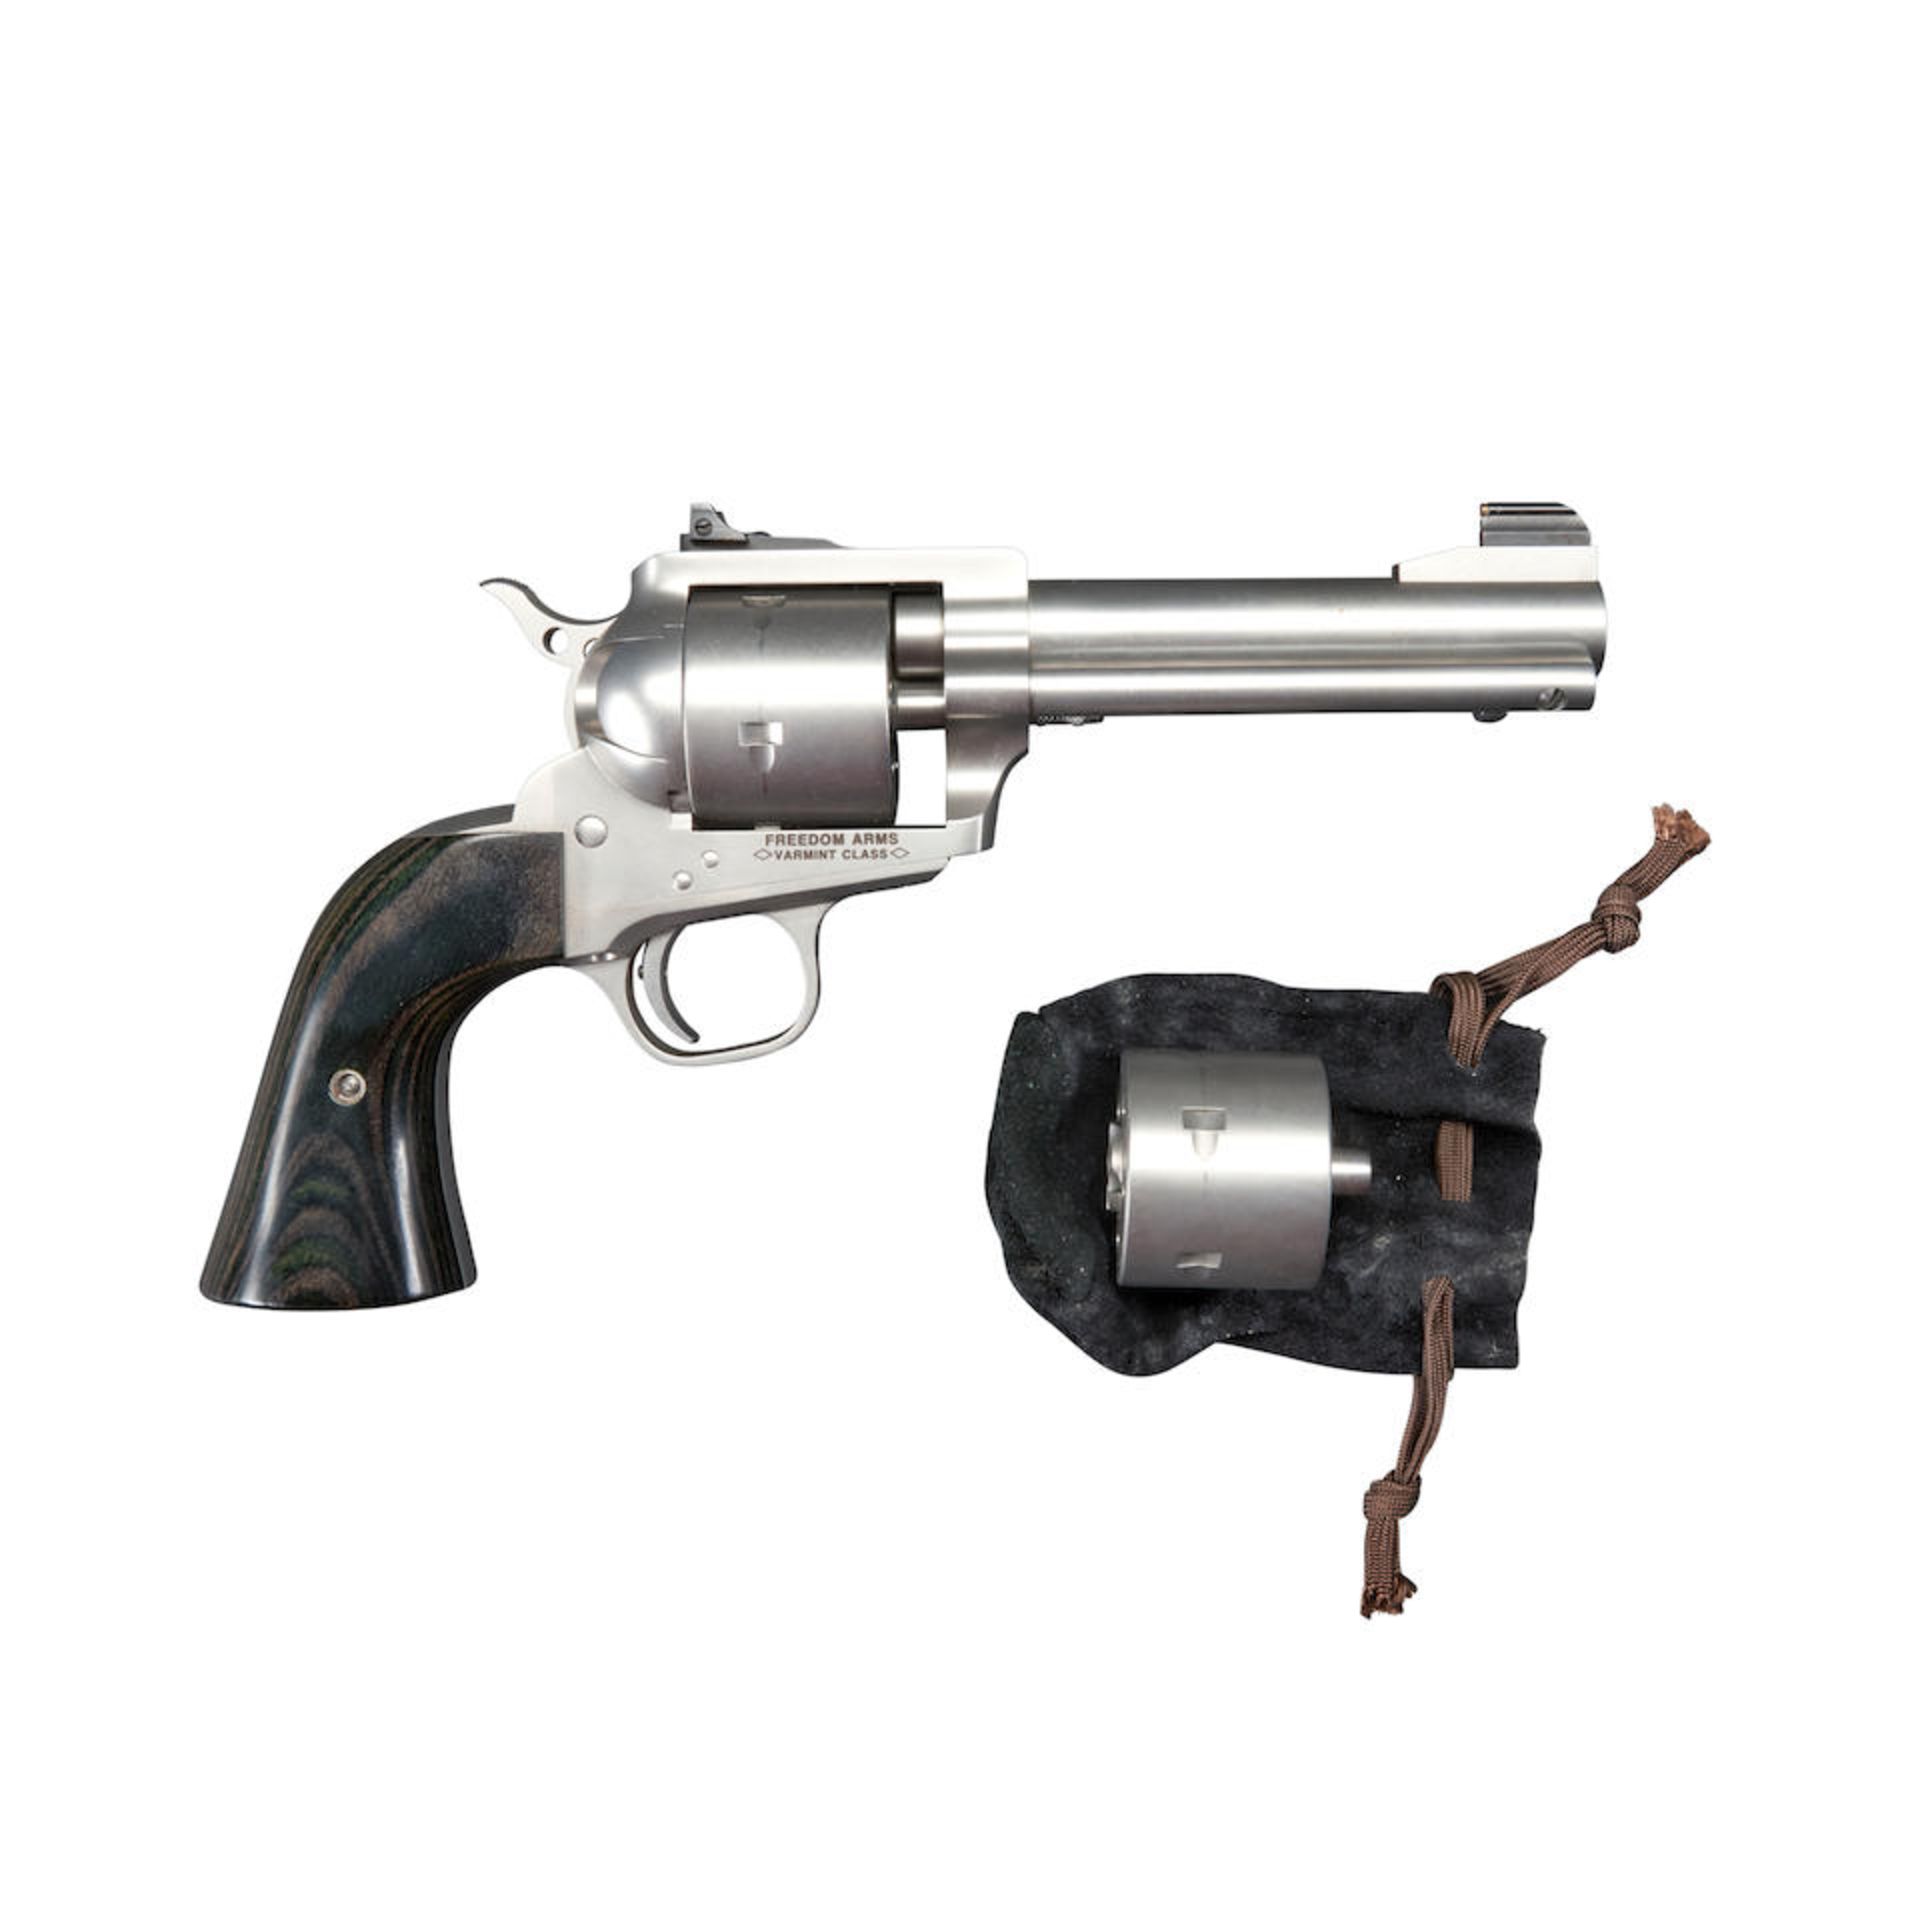 Freedom Arms Model 252 Single Action Revolver, Modern handgun - Bild 3 aus 3